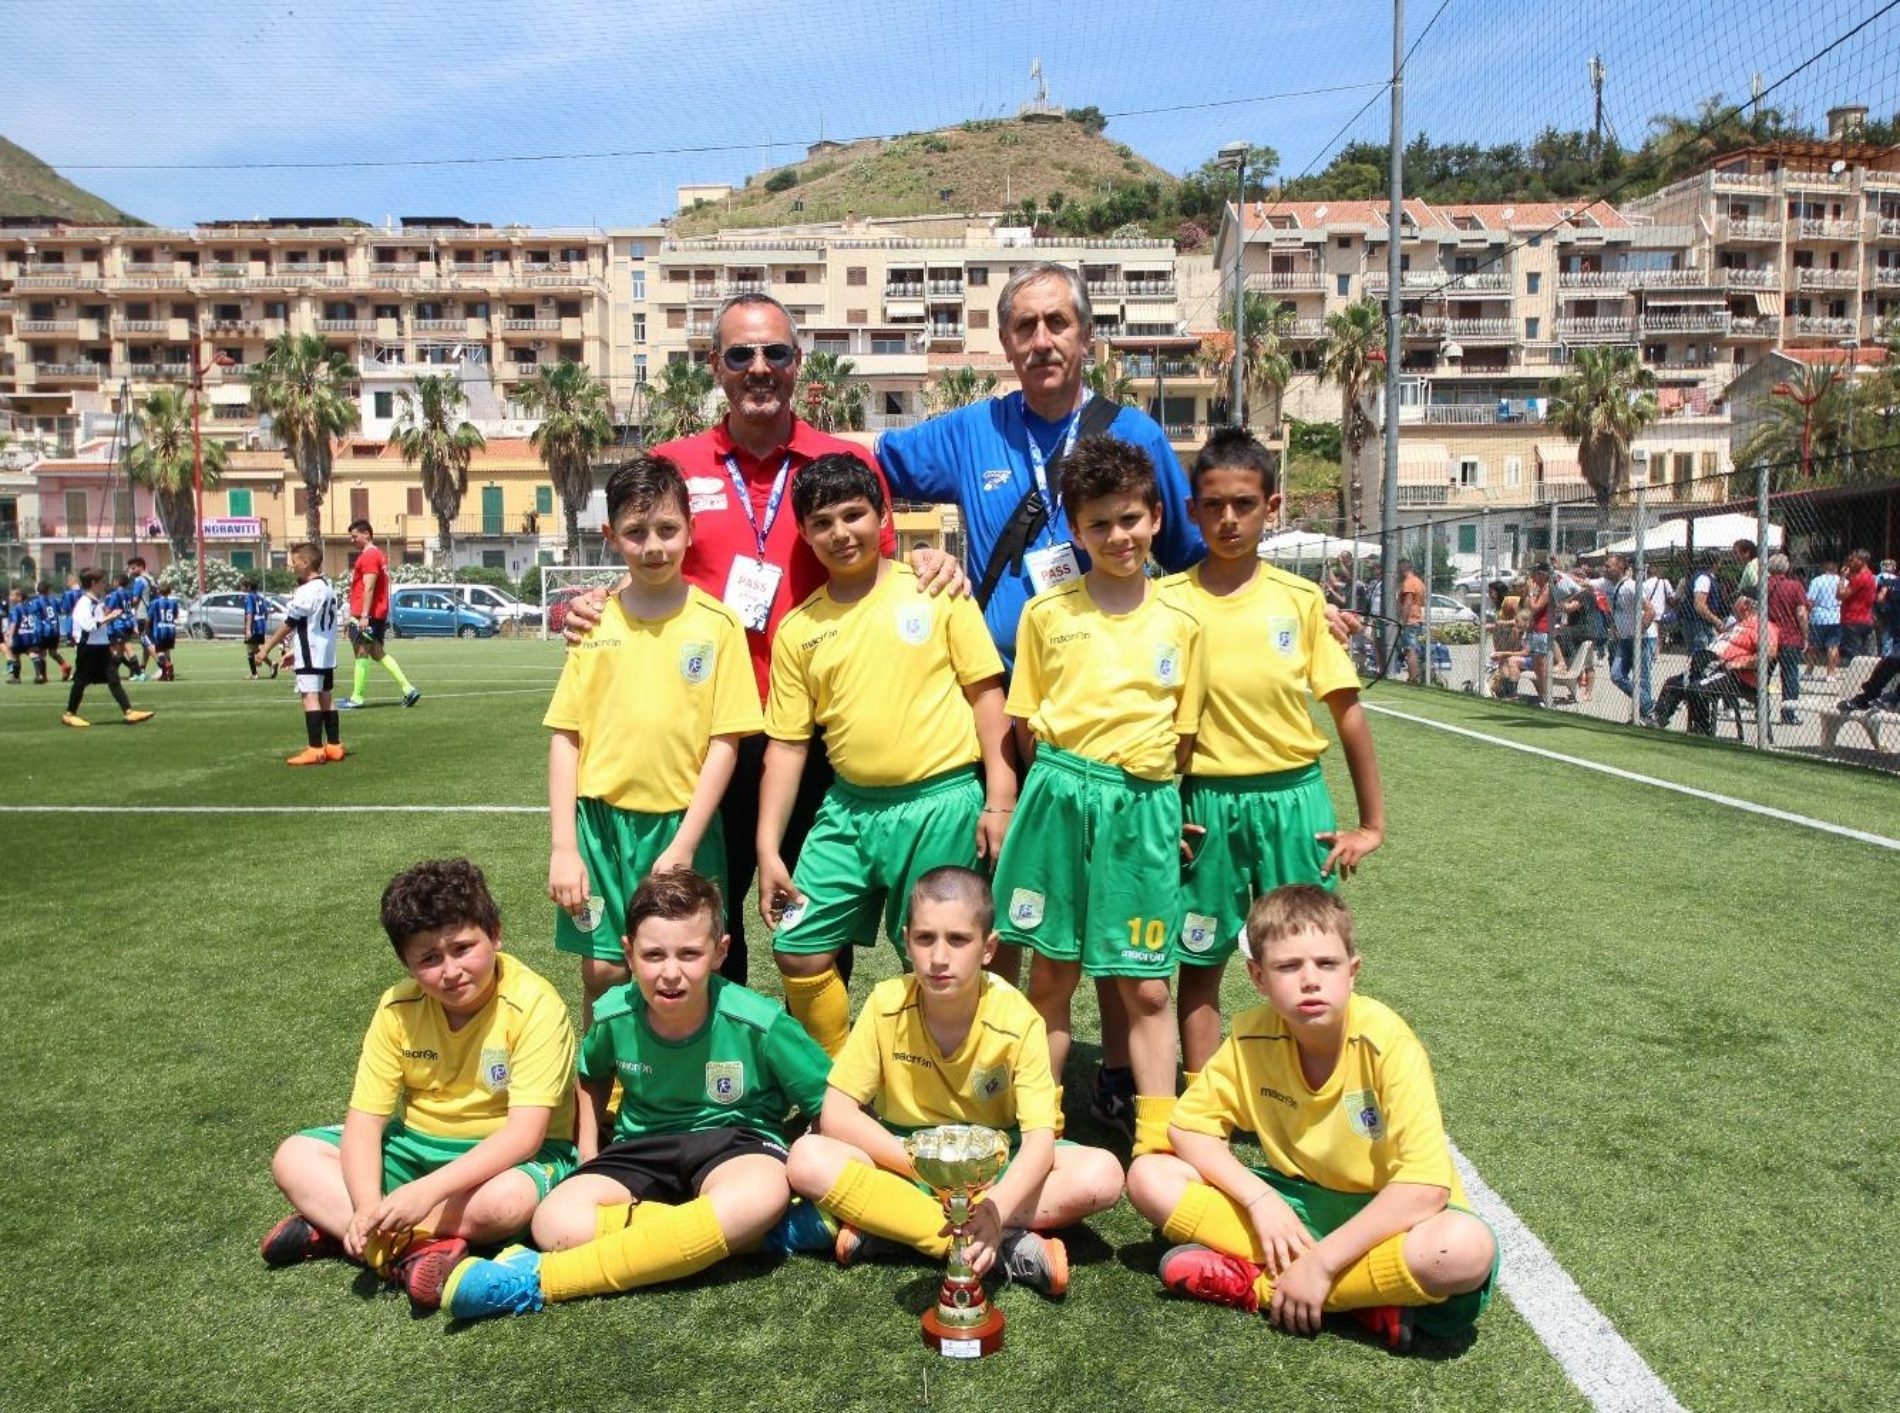 All’Atalanta SicilyCup Accademy la Progetto Enna Sport si aggiudica laCoppa Fair Play